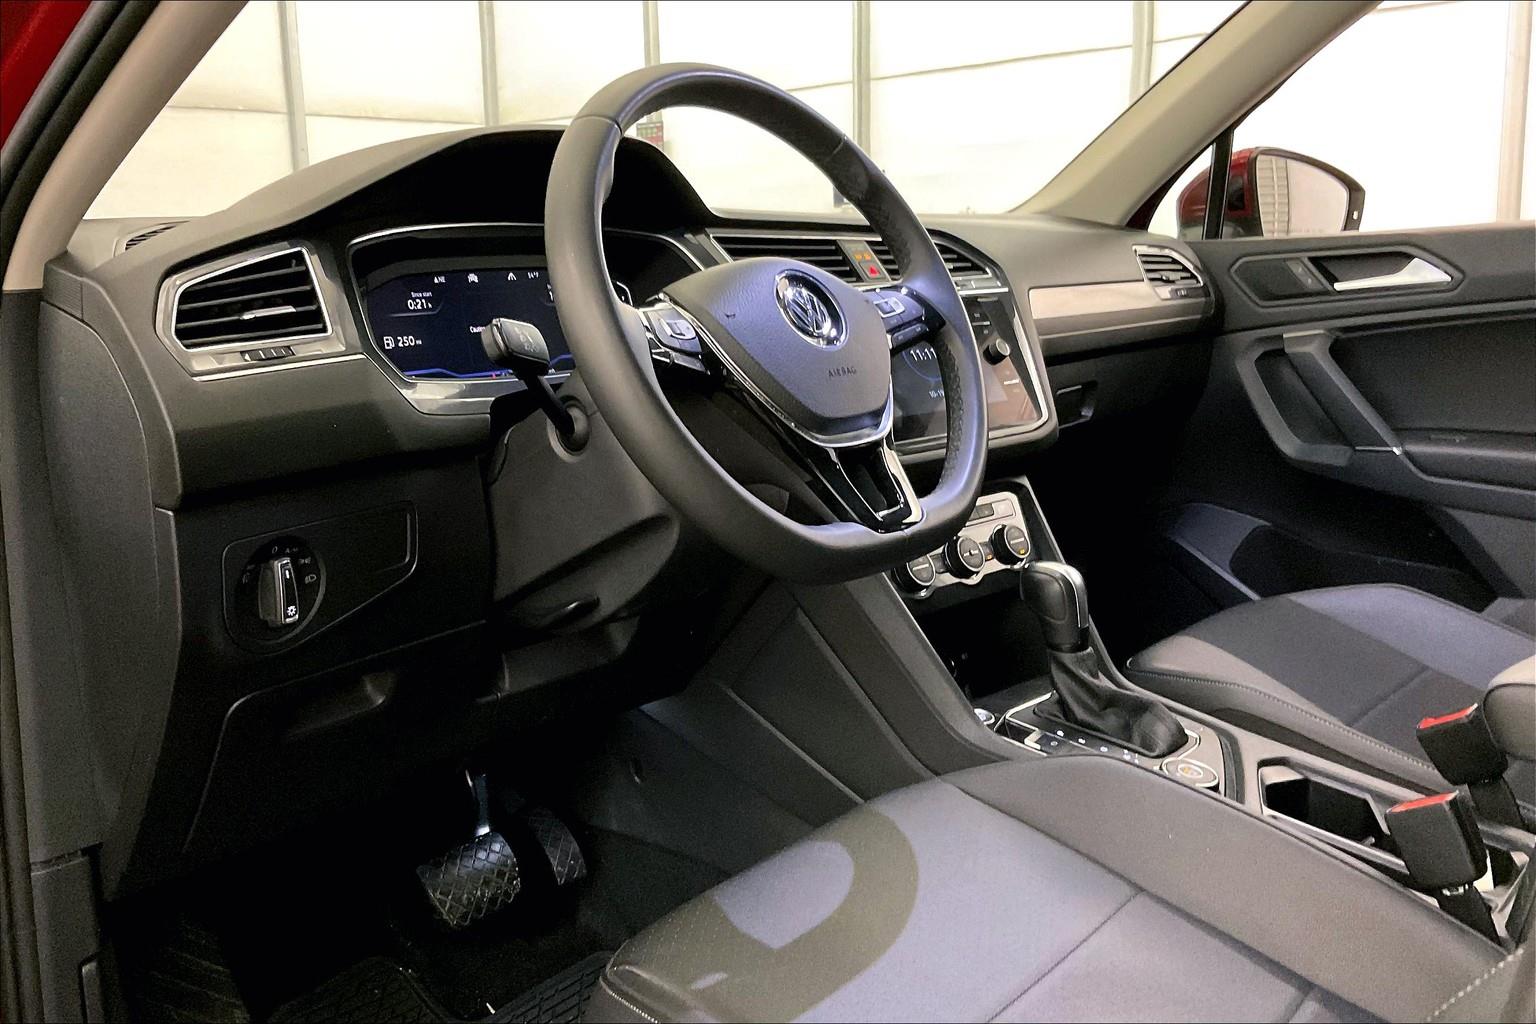 VW Tiguan Mk2 Dash Cluster & Interior Look Around 